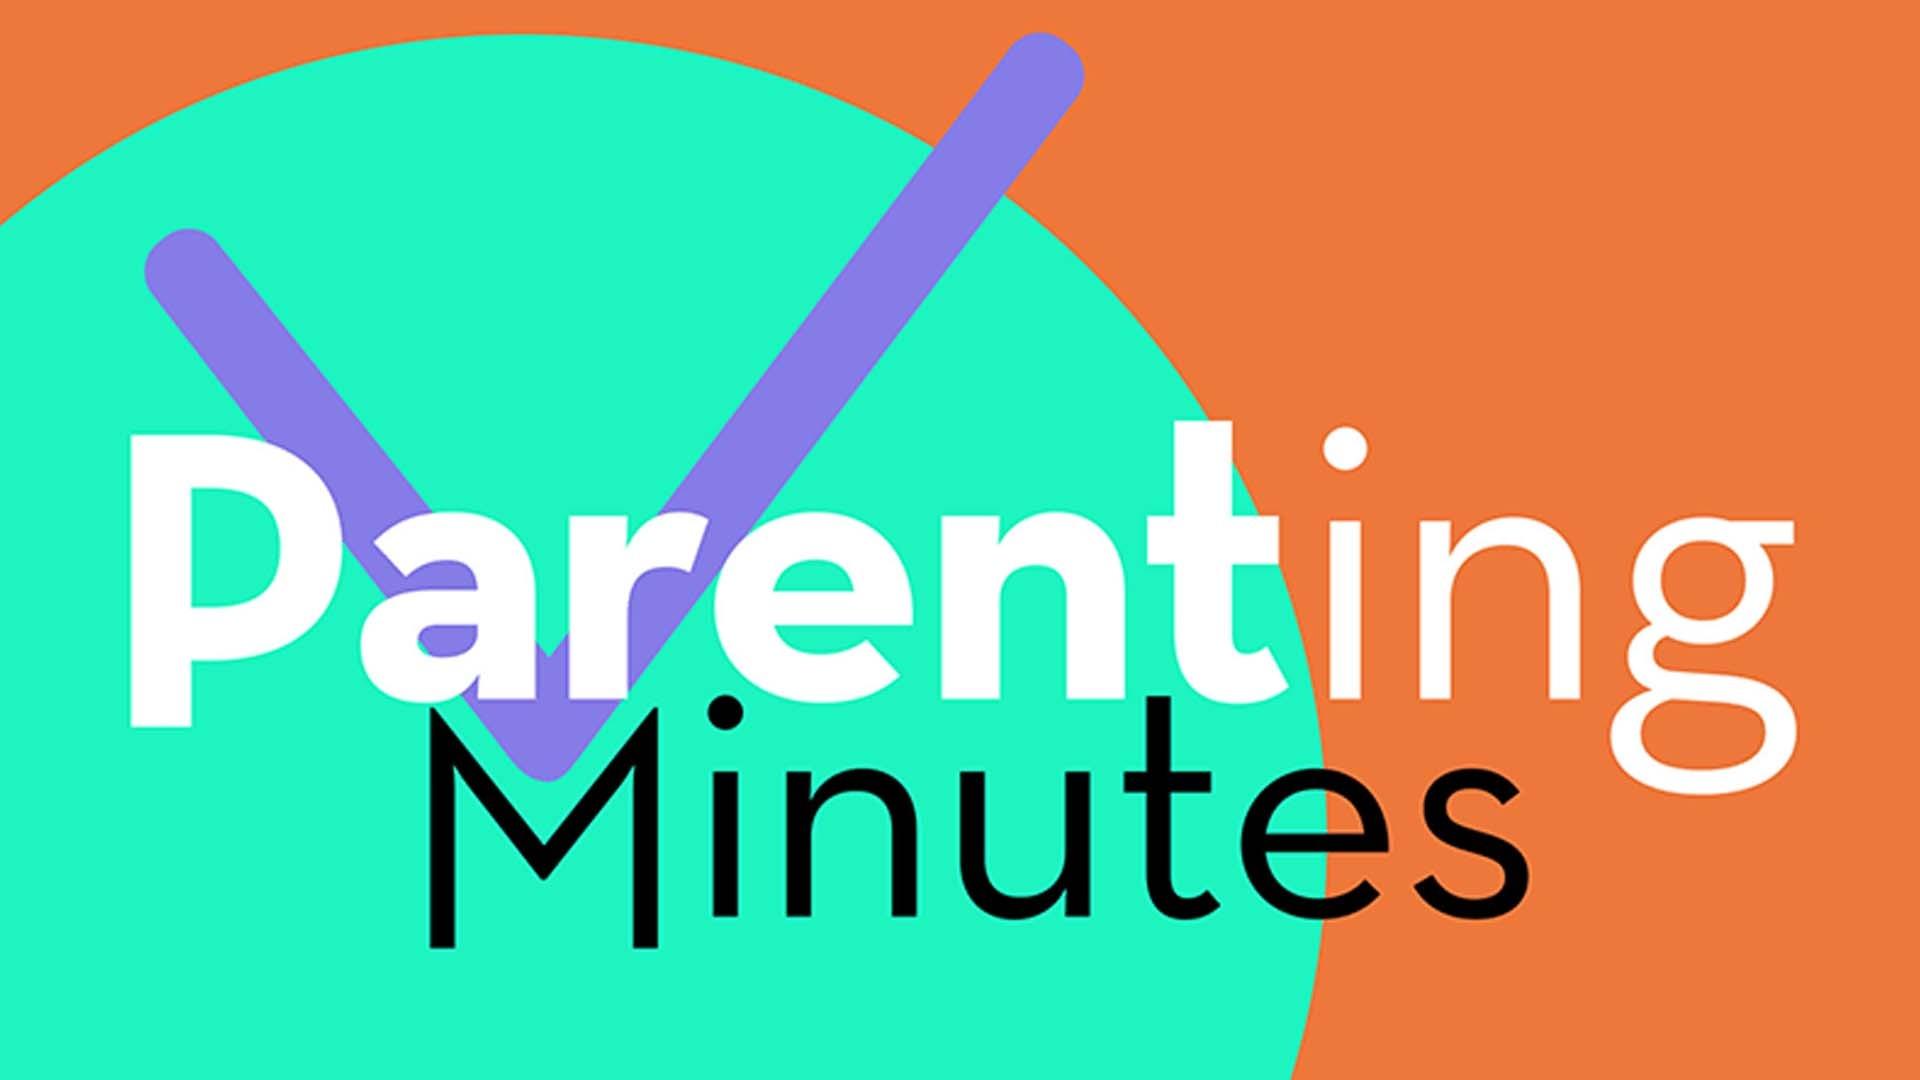 Parenting Minutes